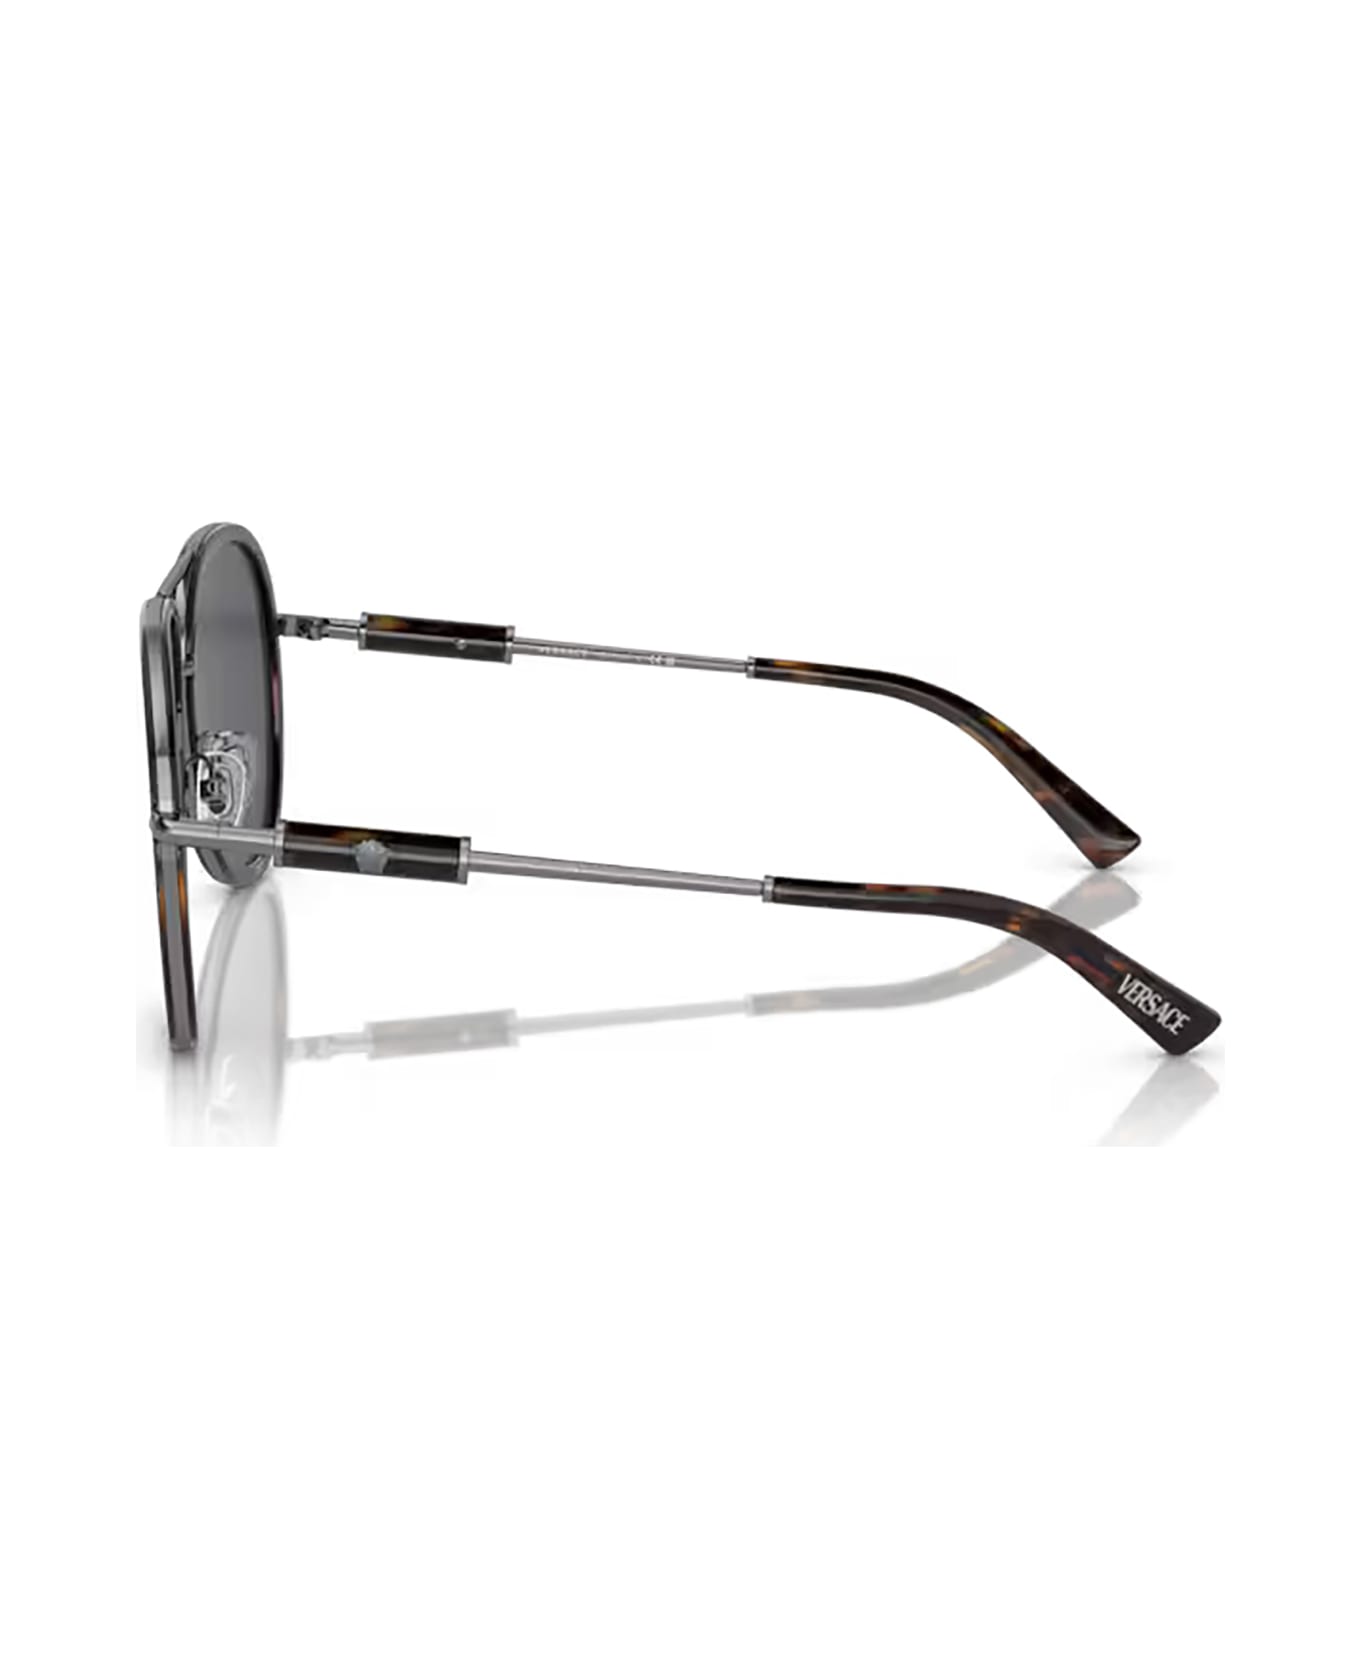 Versace Eyewear Ve2260 Havana Sunglasses - Havana